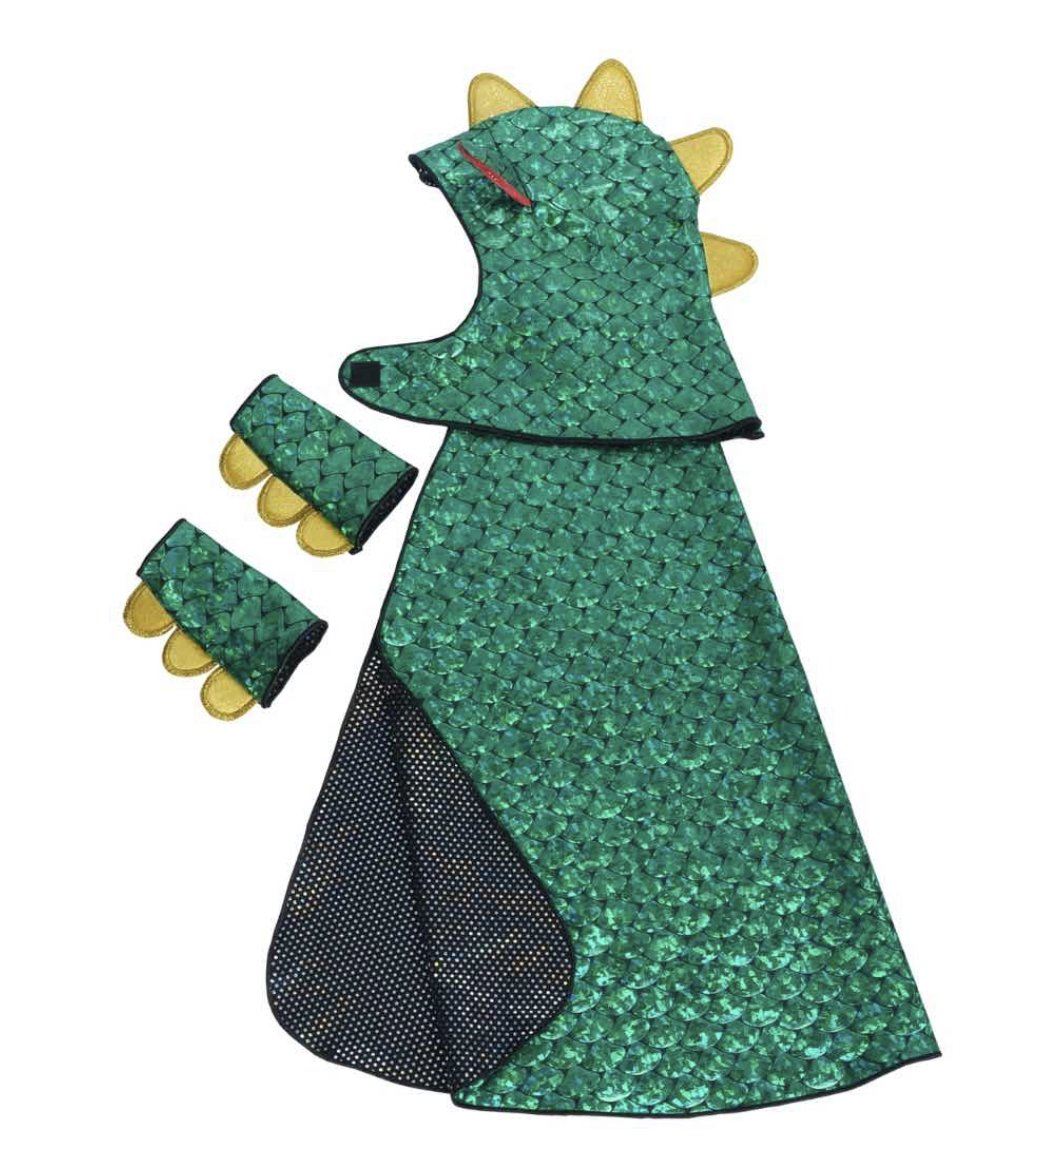 Dragon Costume and Knight Cape, Reversible Cape - Alder & Alouette